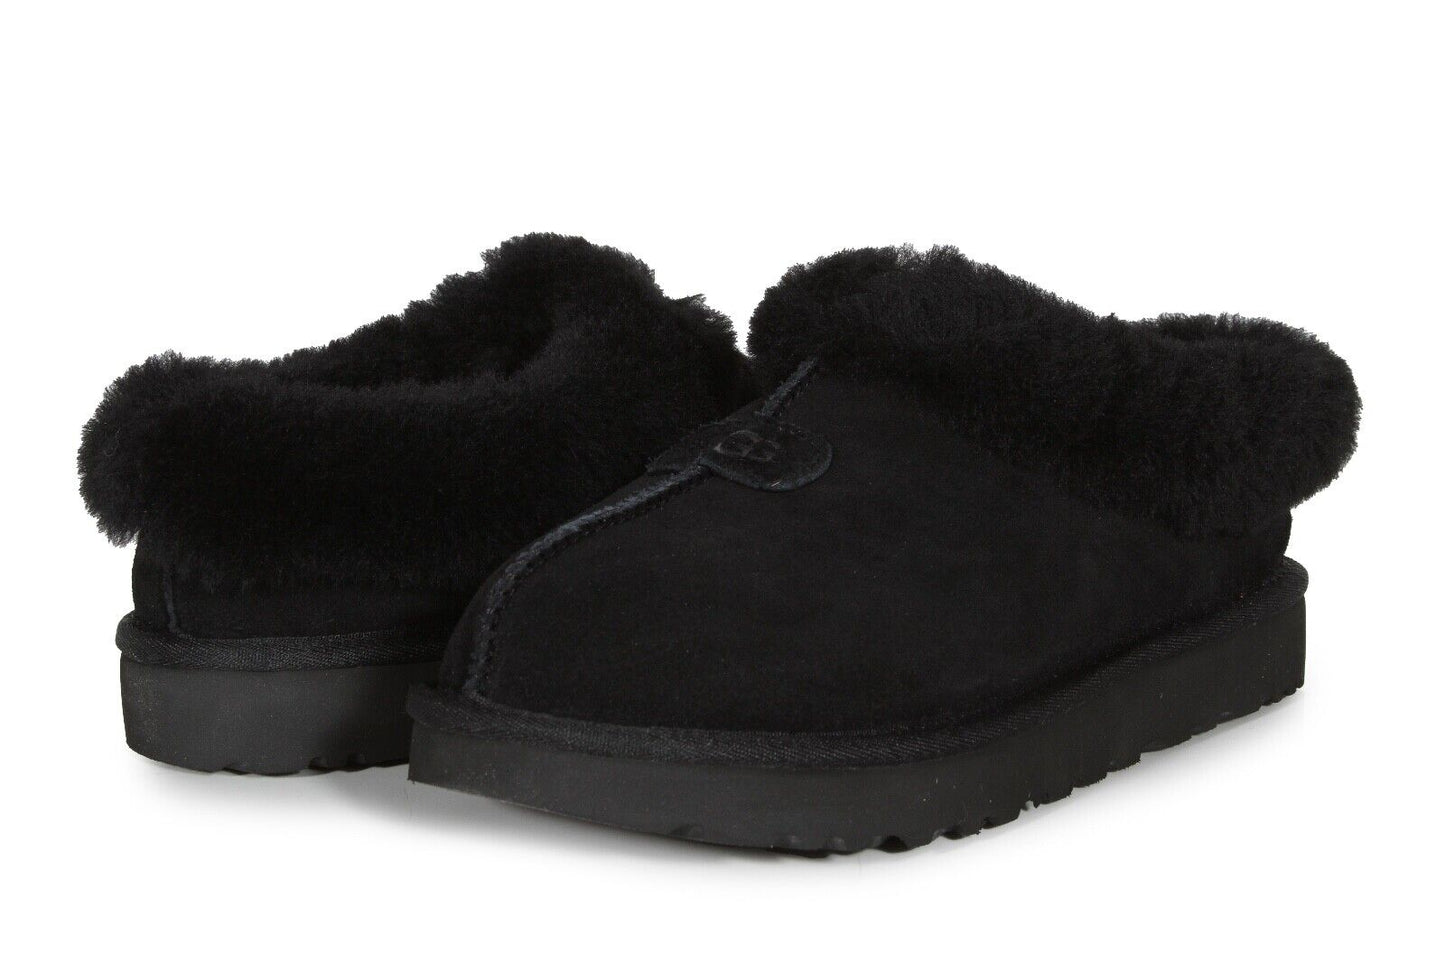 UGG Tazzette Women's Slippers in Black 1134810-BLK